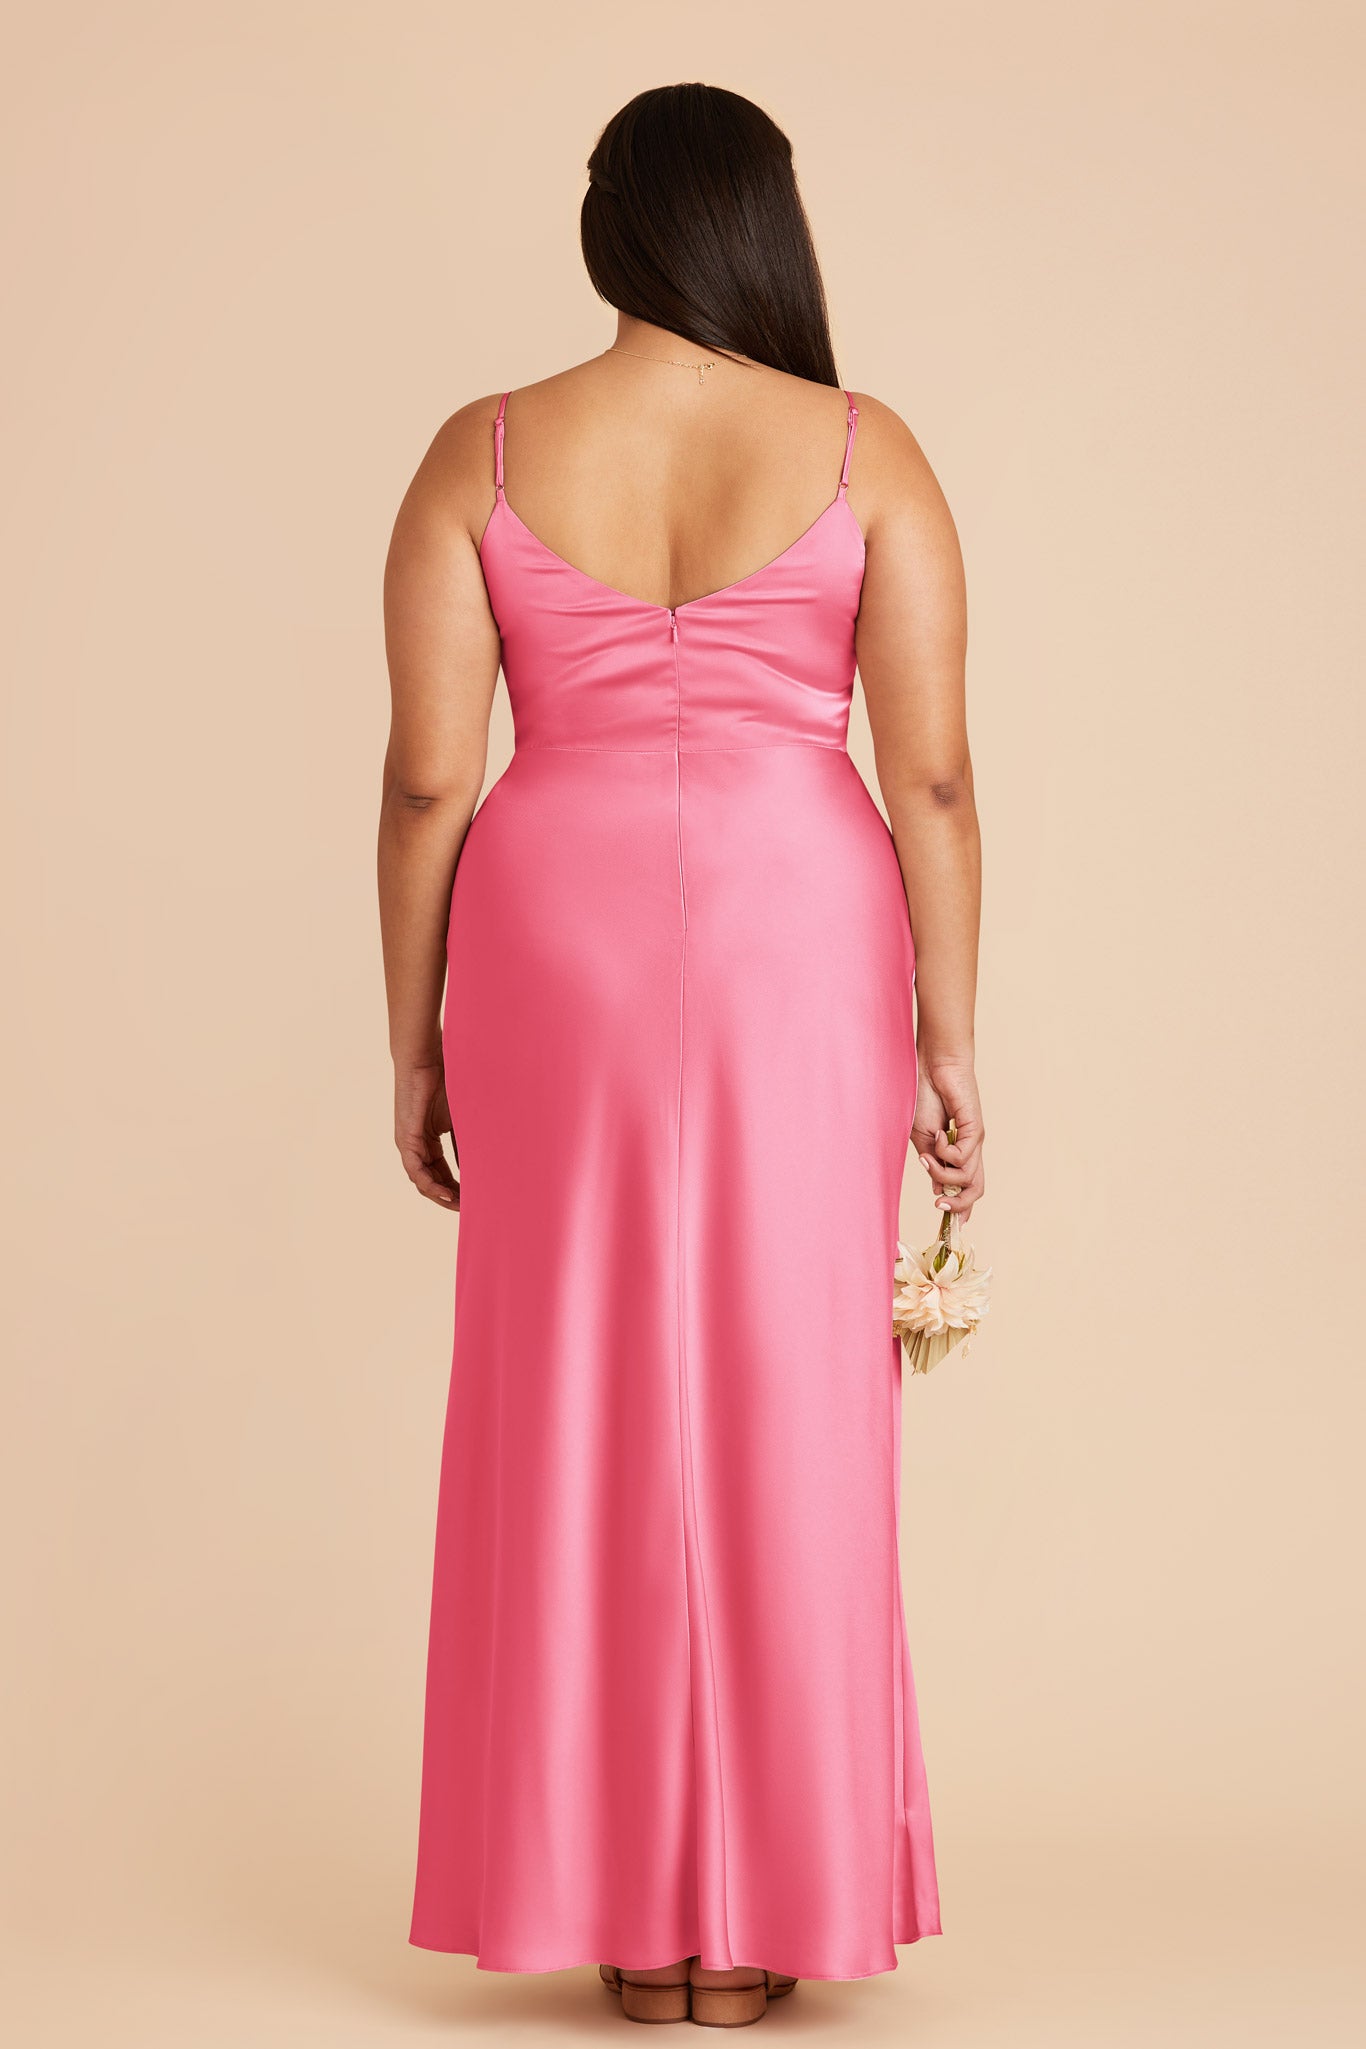 Bon Bon Pink Jay Matte Satin Dress by Birdy Grey